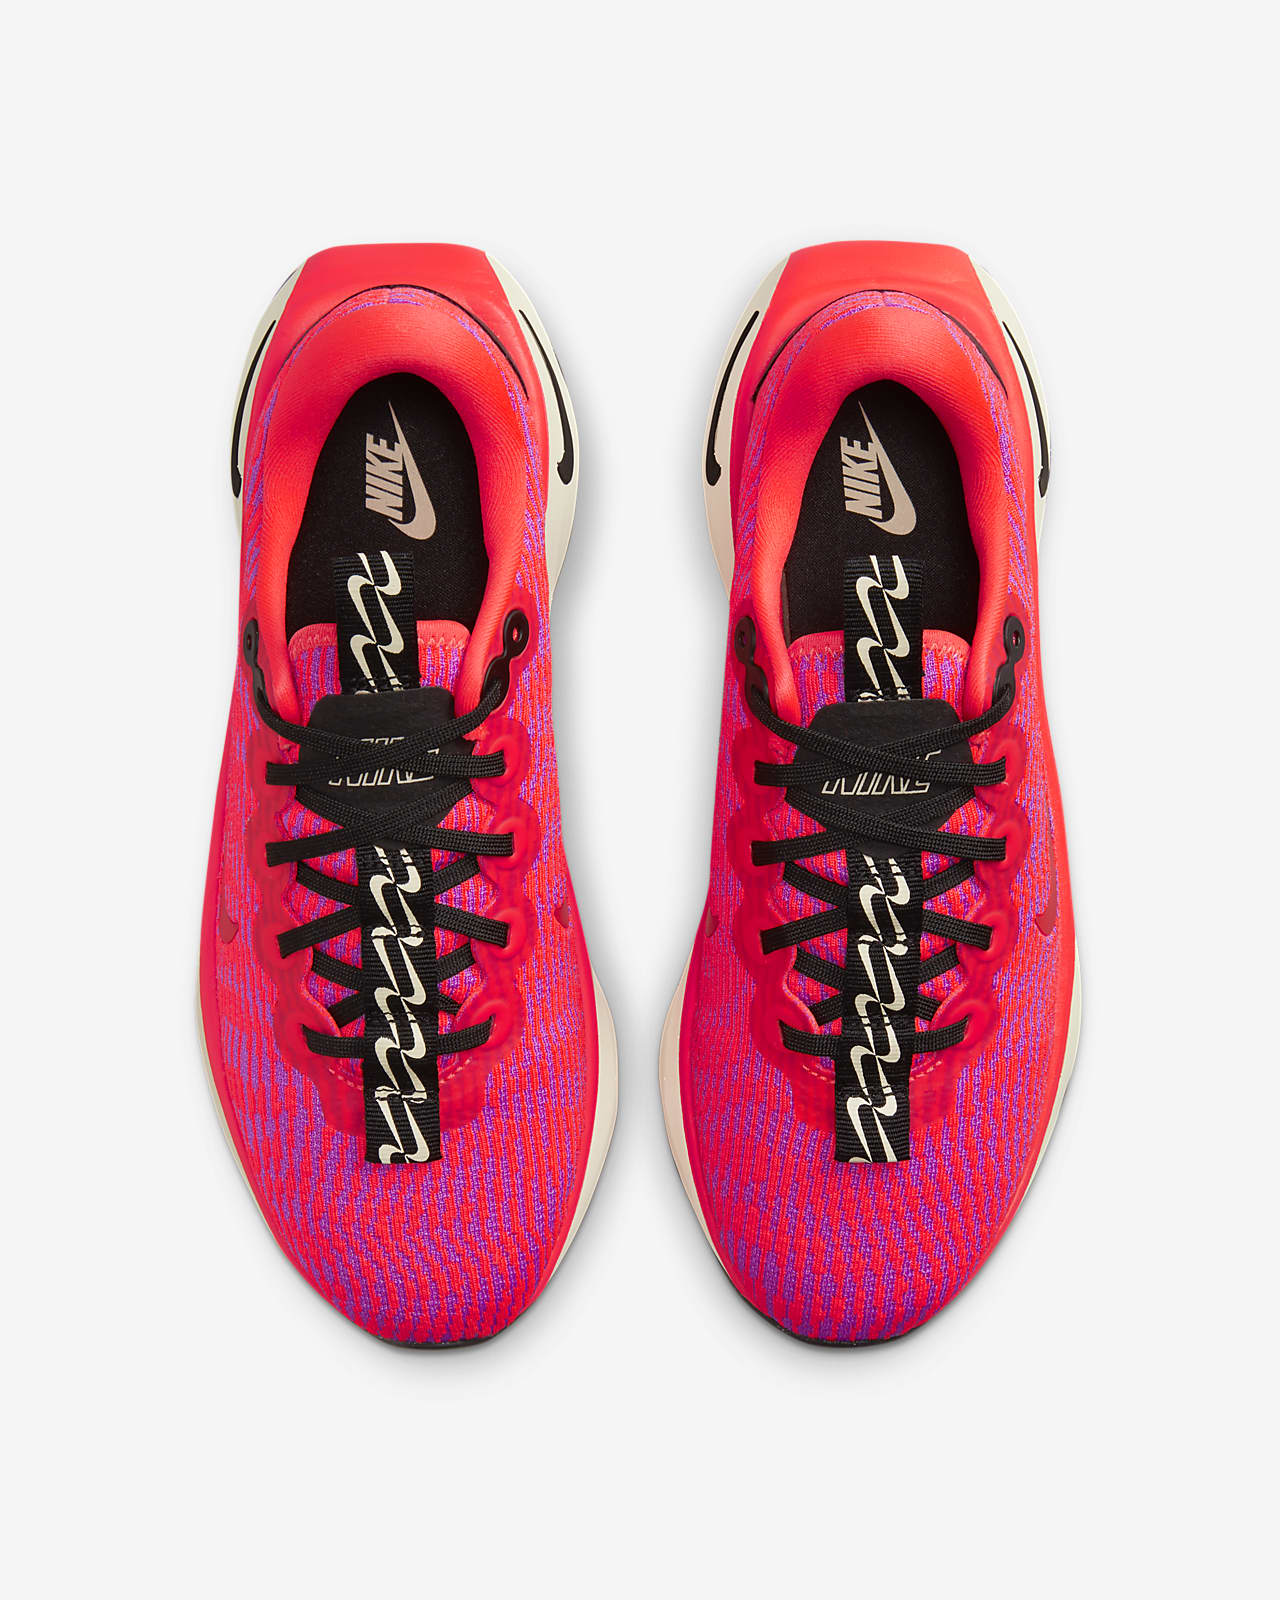 Calzado de caminata para mujer Nike Motiva